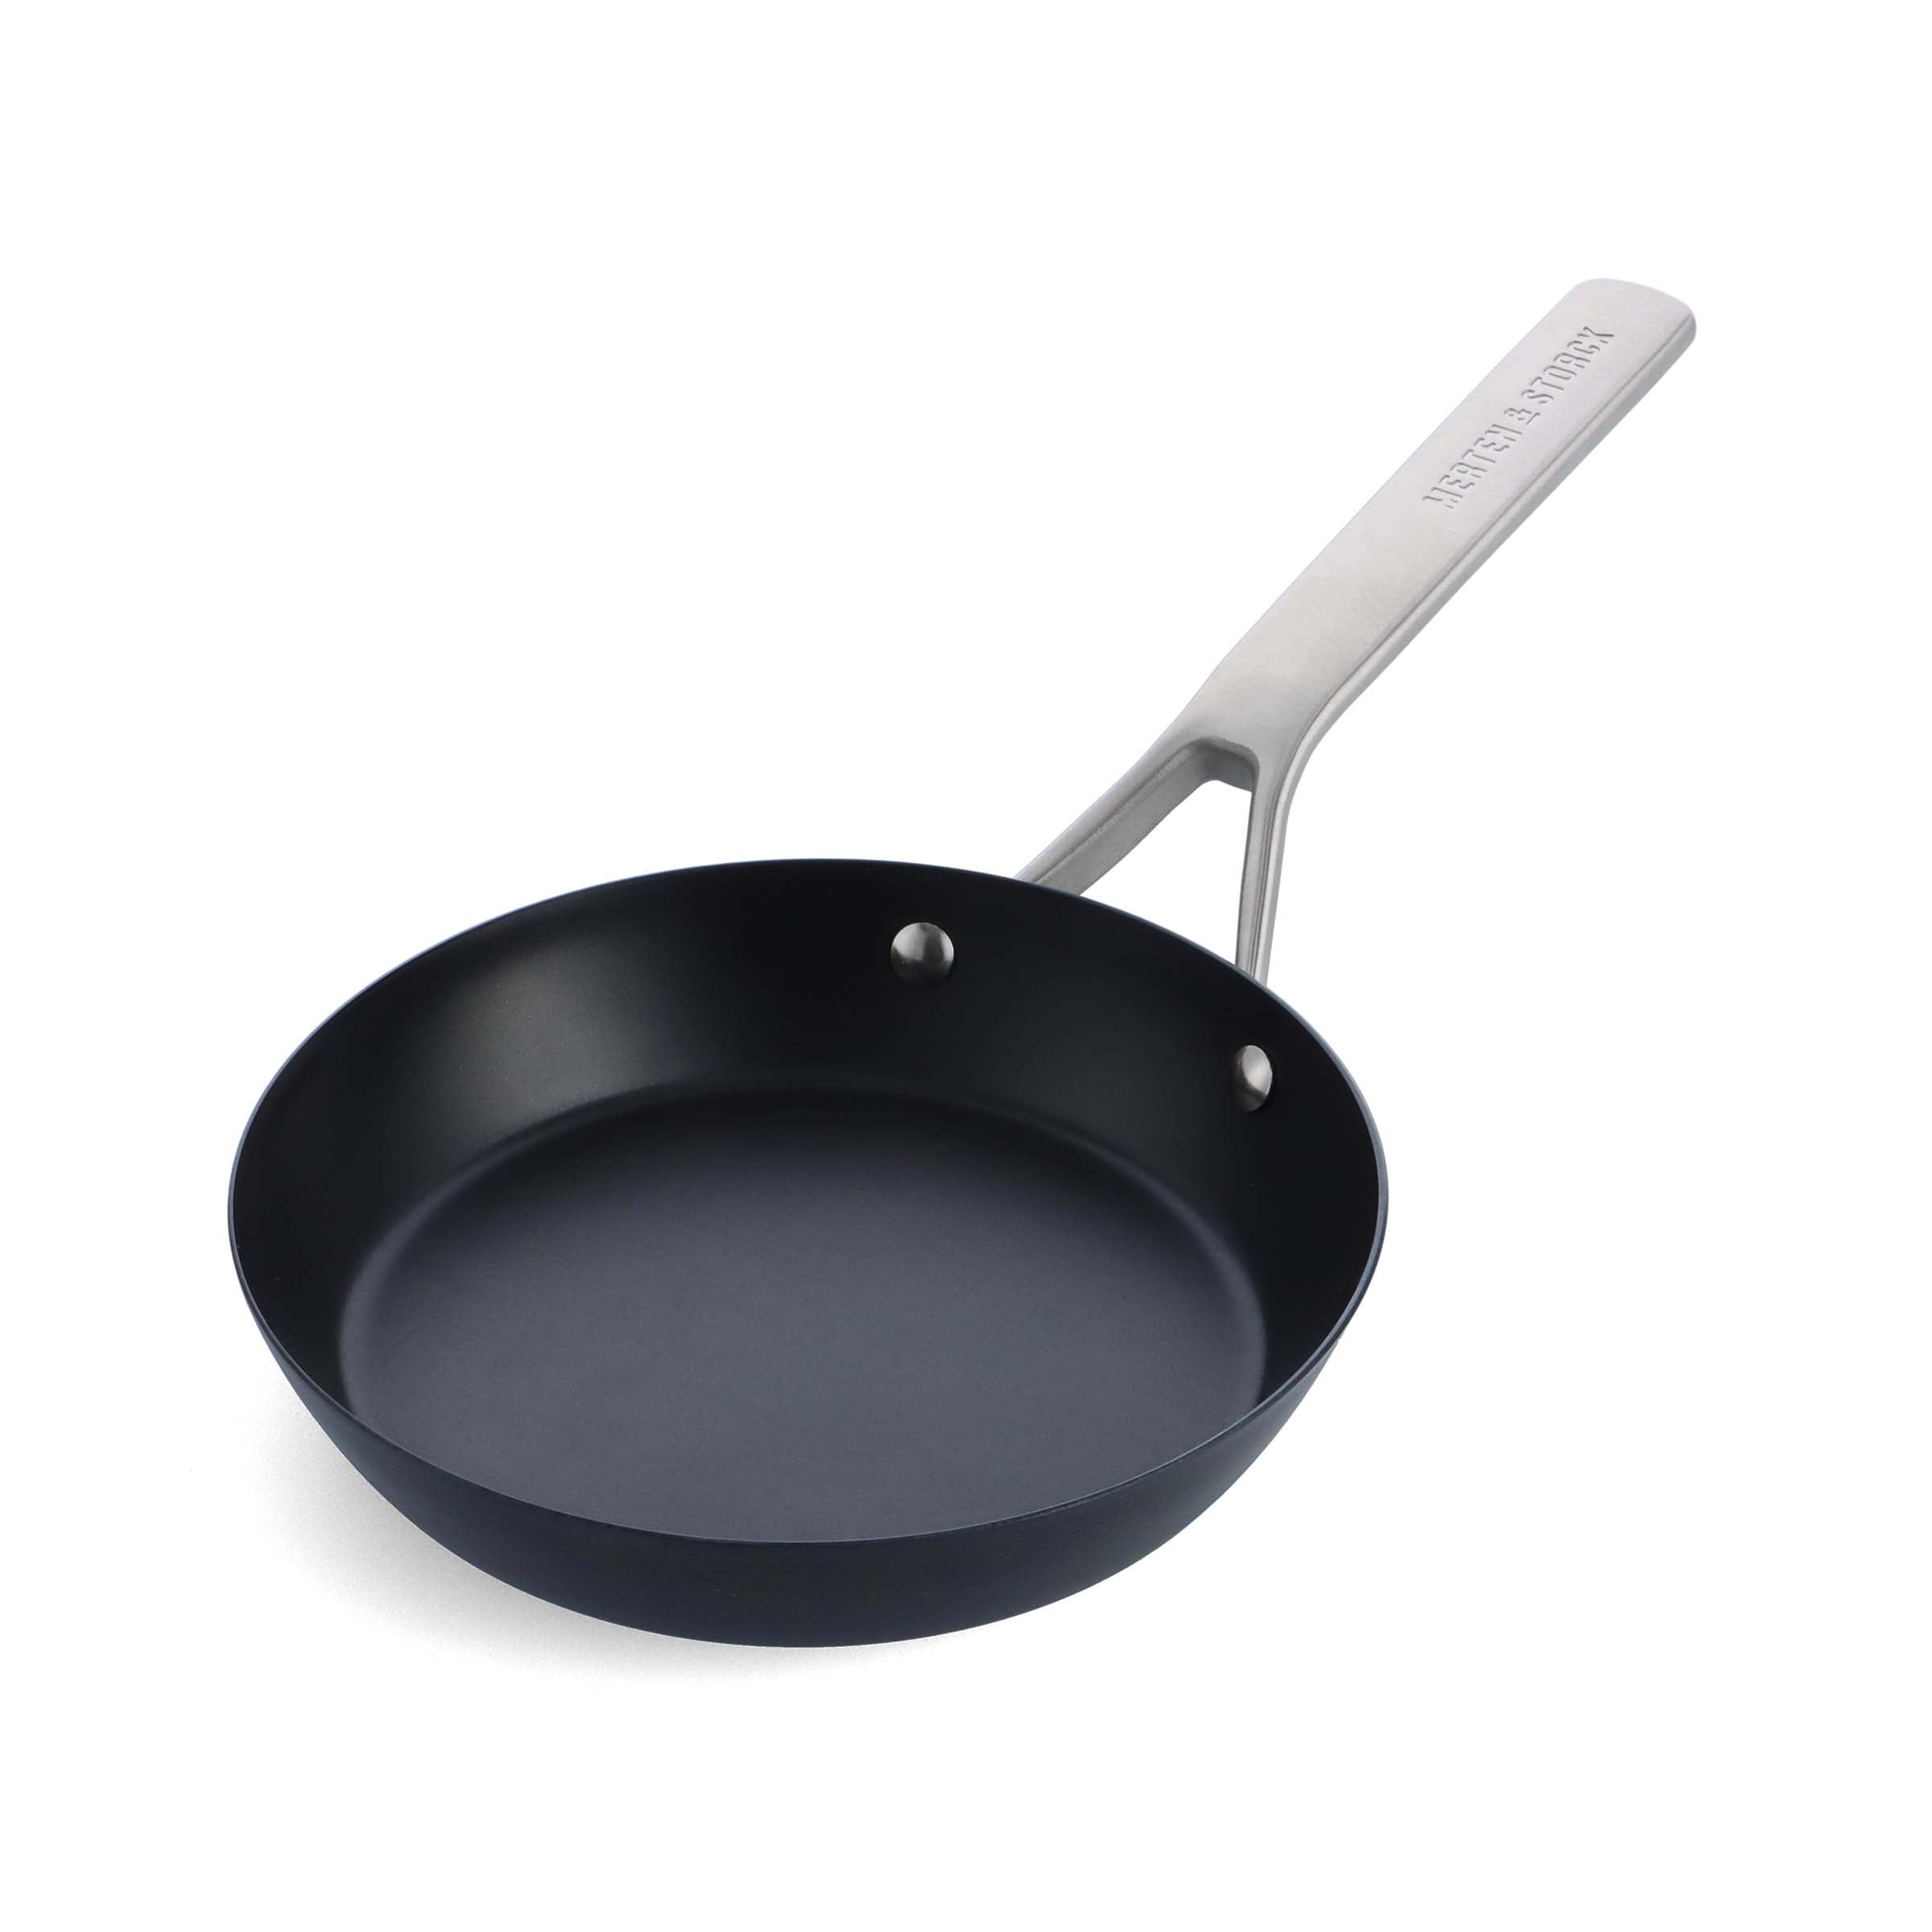 7,9-inch Pre-Seasoned Black Carbon Steel Skillet Pan